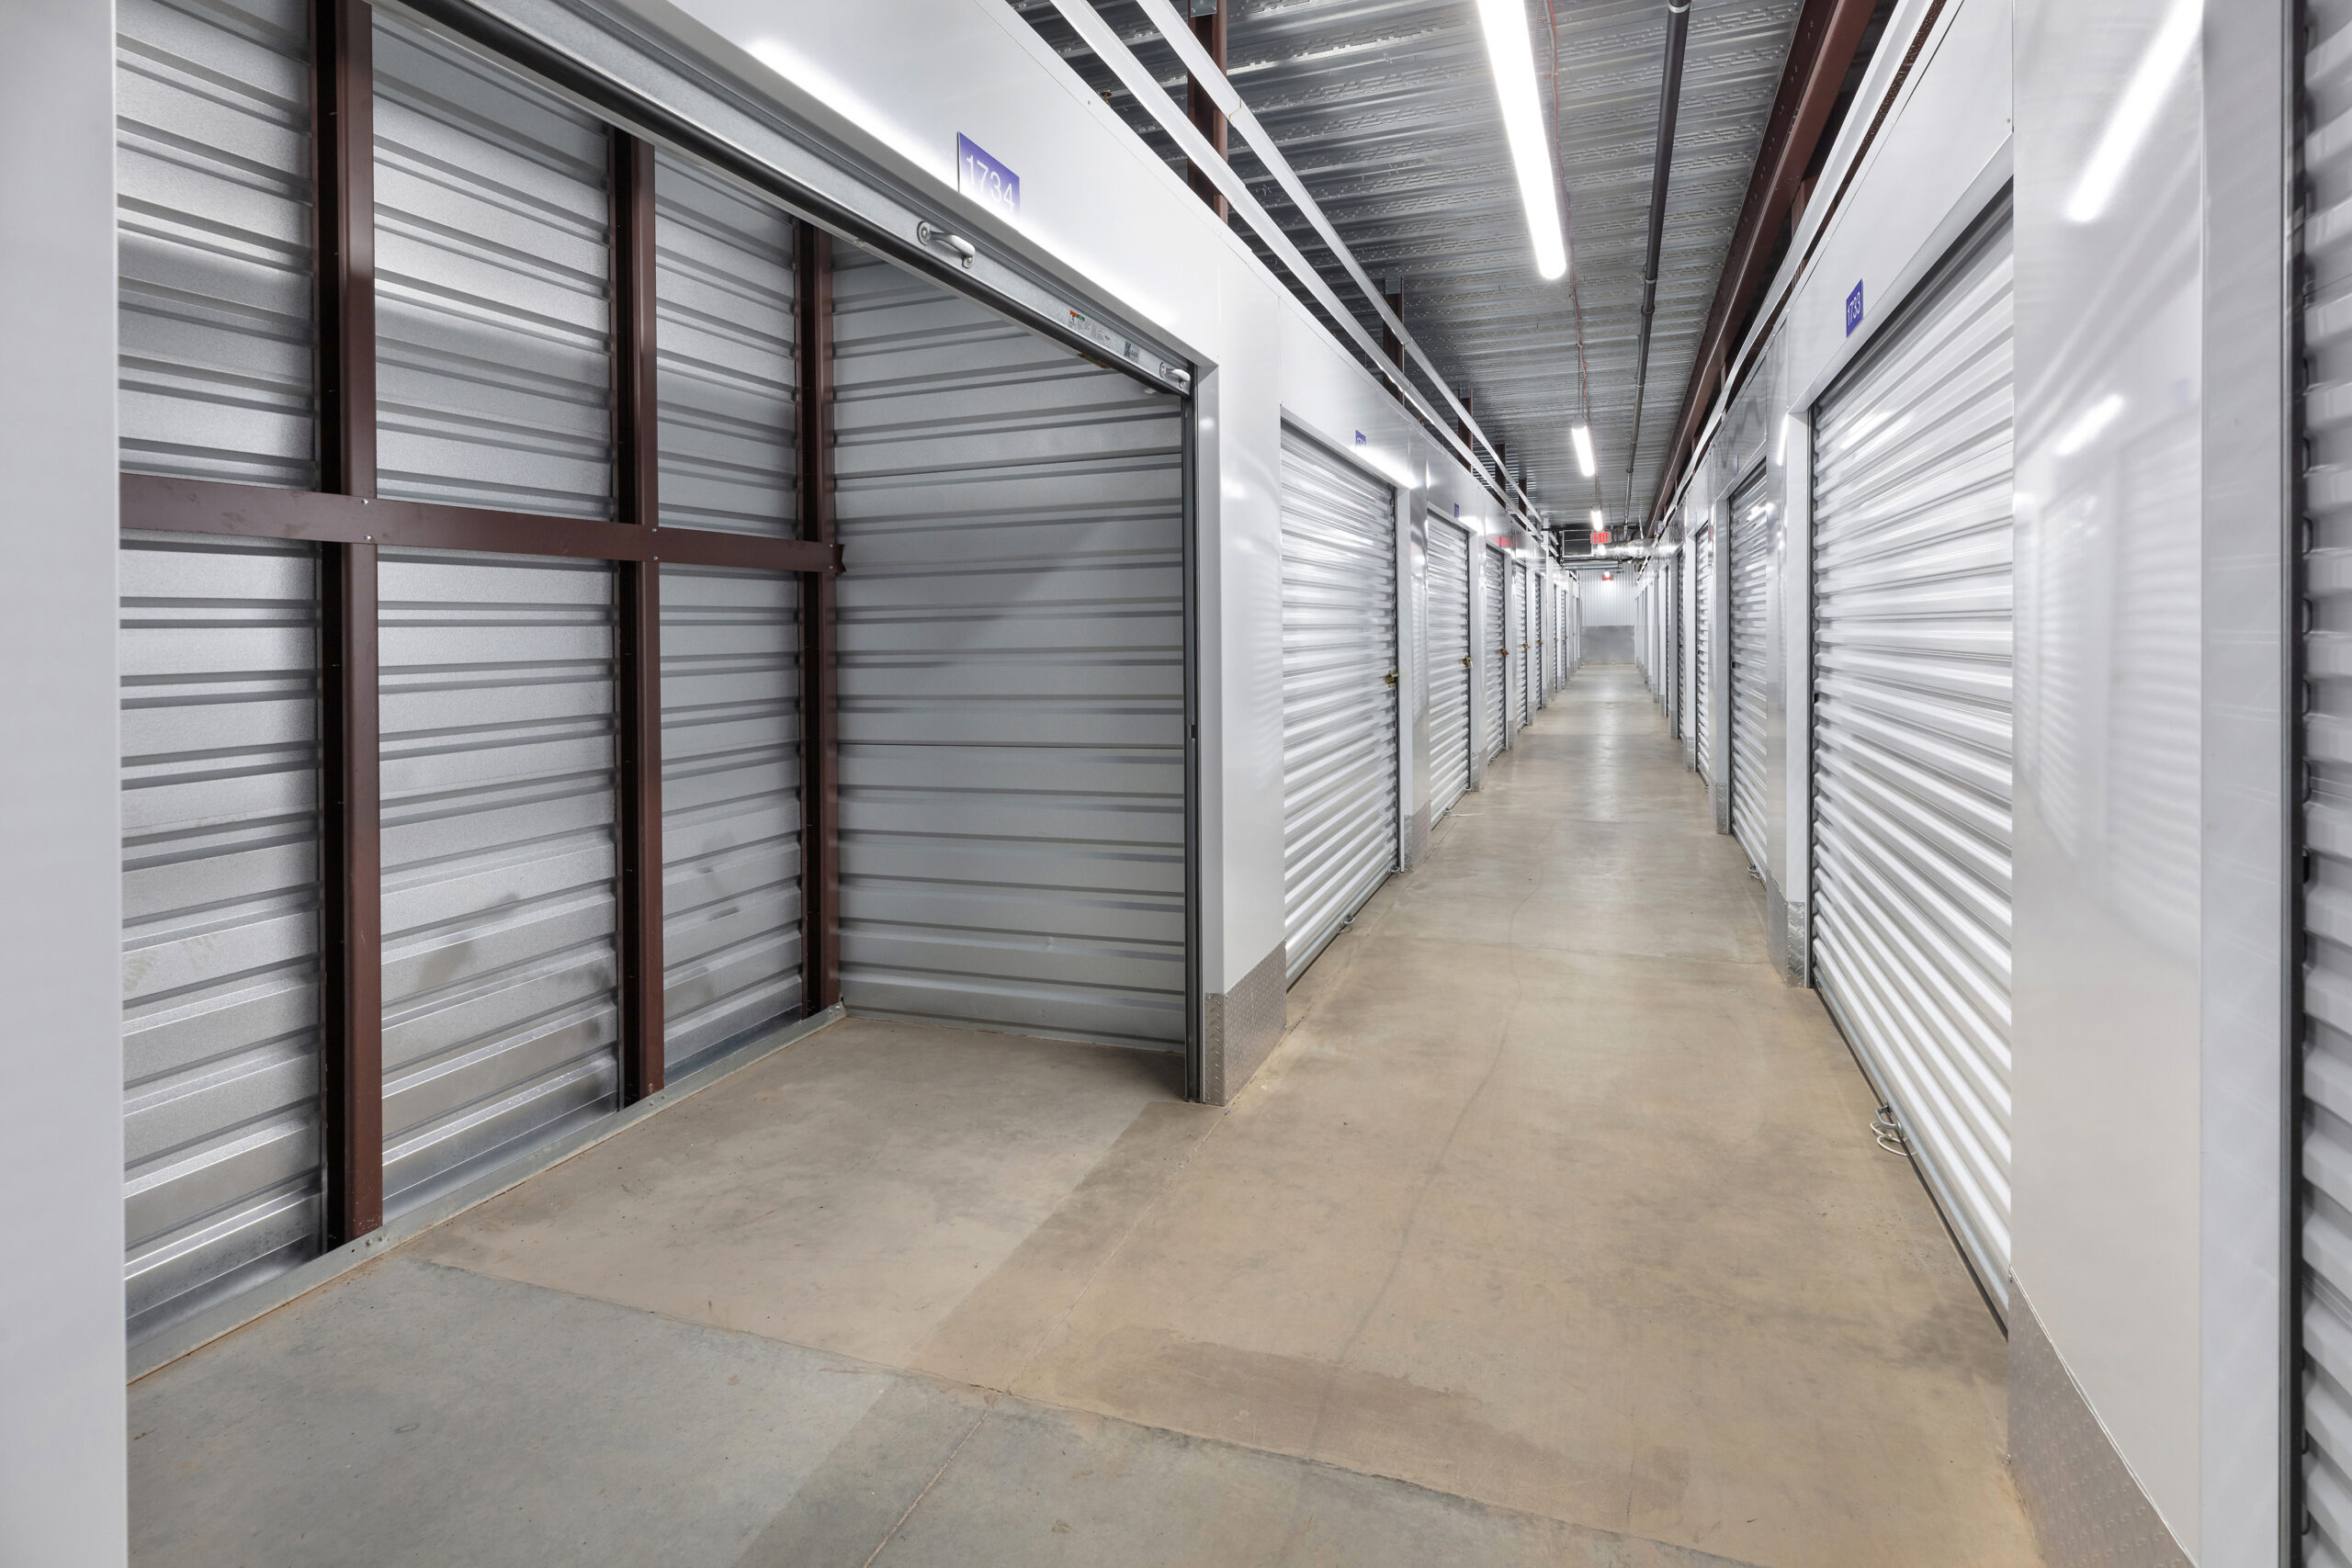 Indoor units at Self Storage Plus in Lanham.